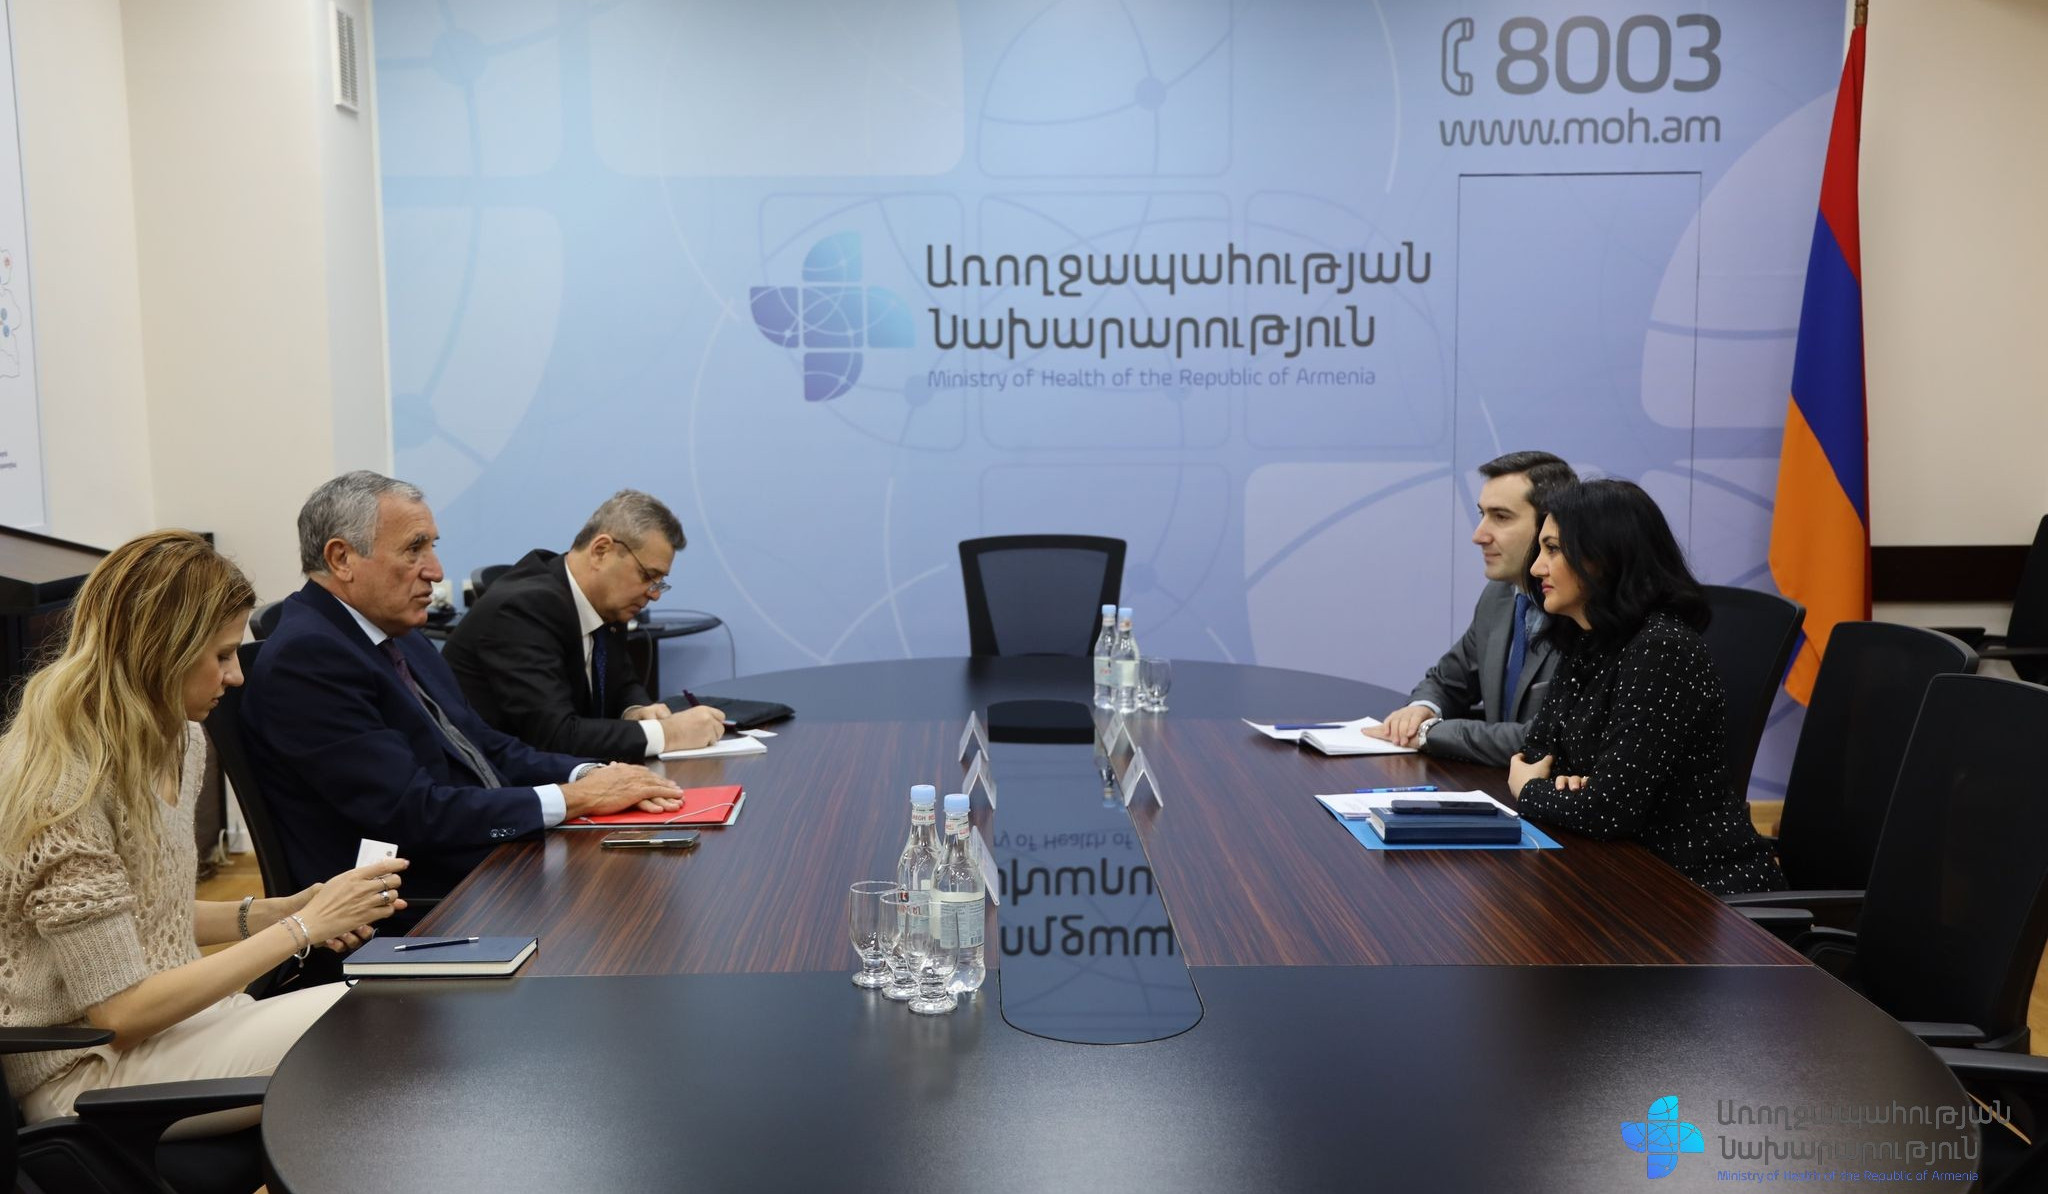 Հայաստանի և Մալթայի միջև համագործակցությունը կշարունակի ամրապնդվել՝ ներառելով համագործակցության նոր ուղղություններ